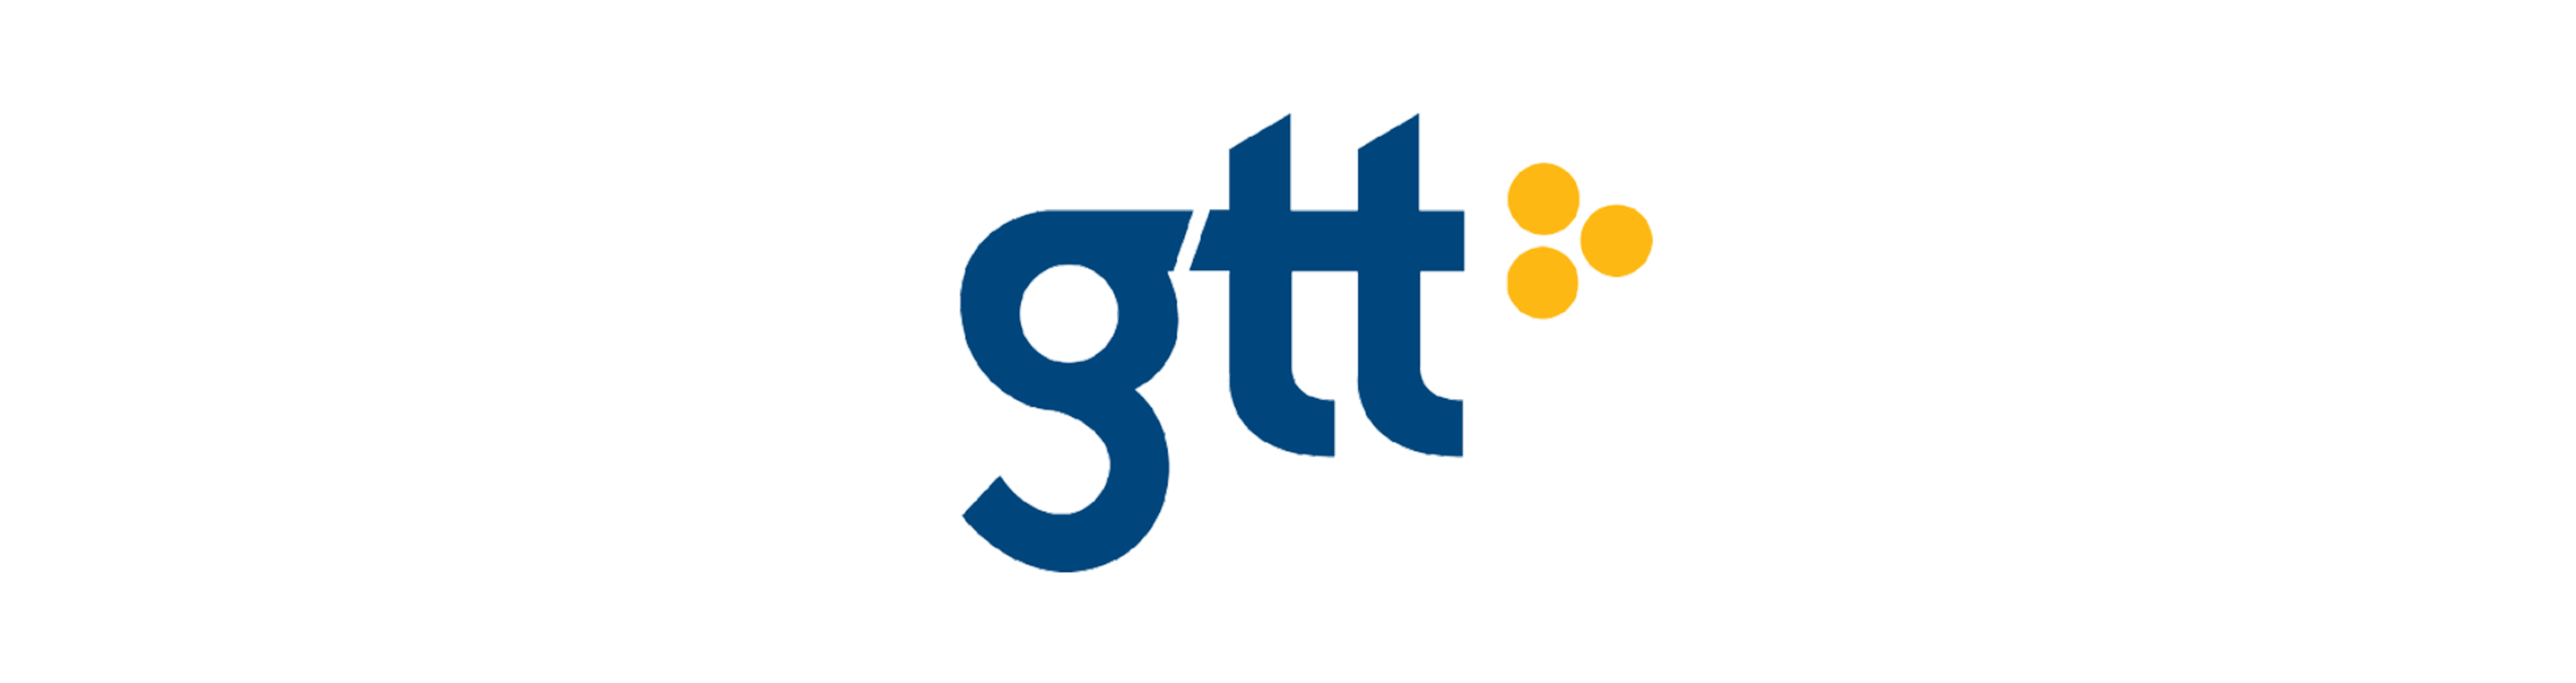 Gtt Logo - Gtt Logo